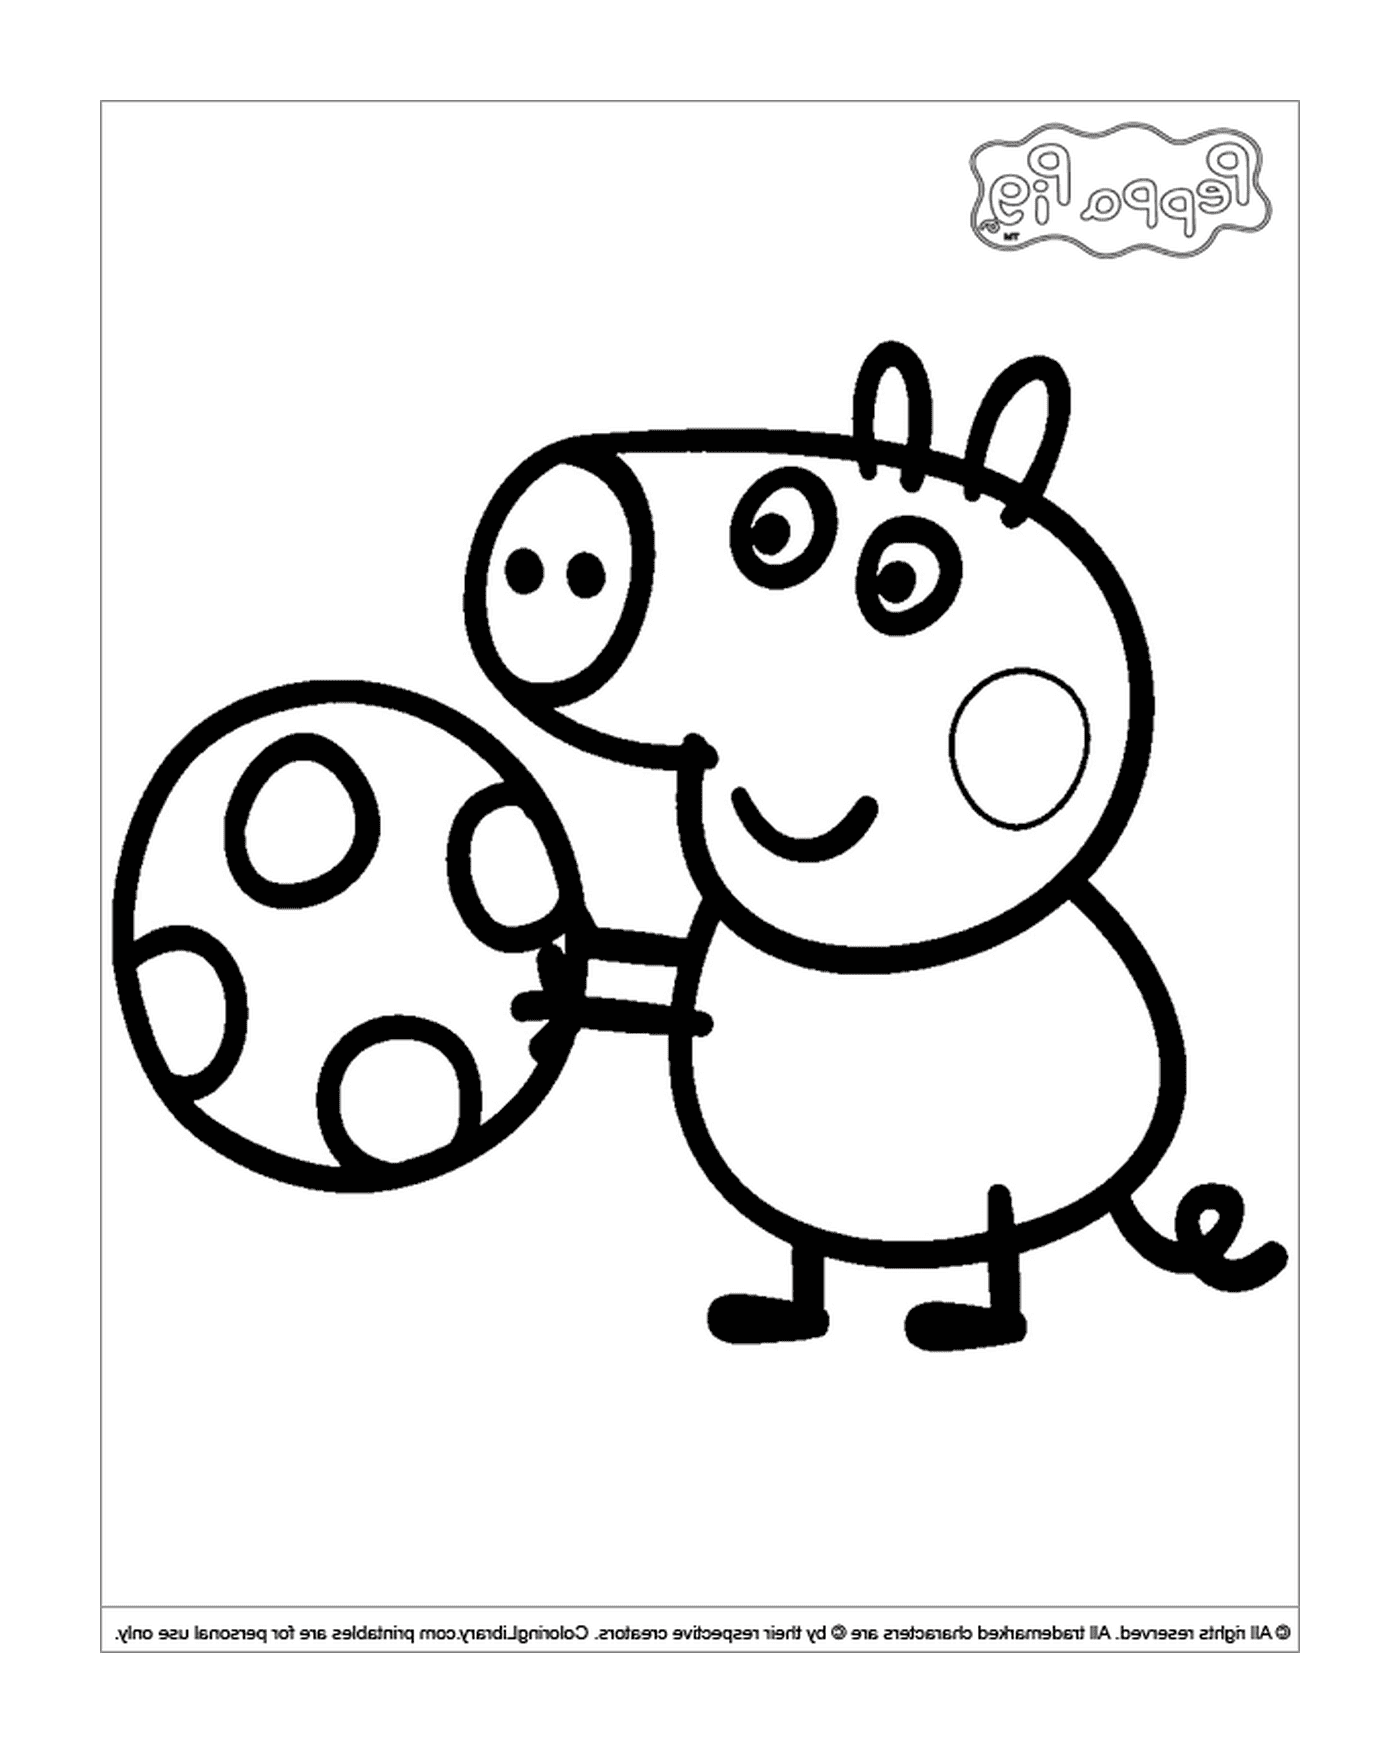  फुटबॉल गेंद के साथ सूअर 